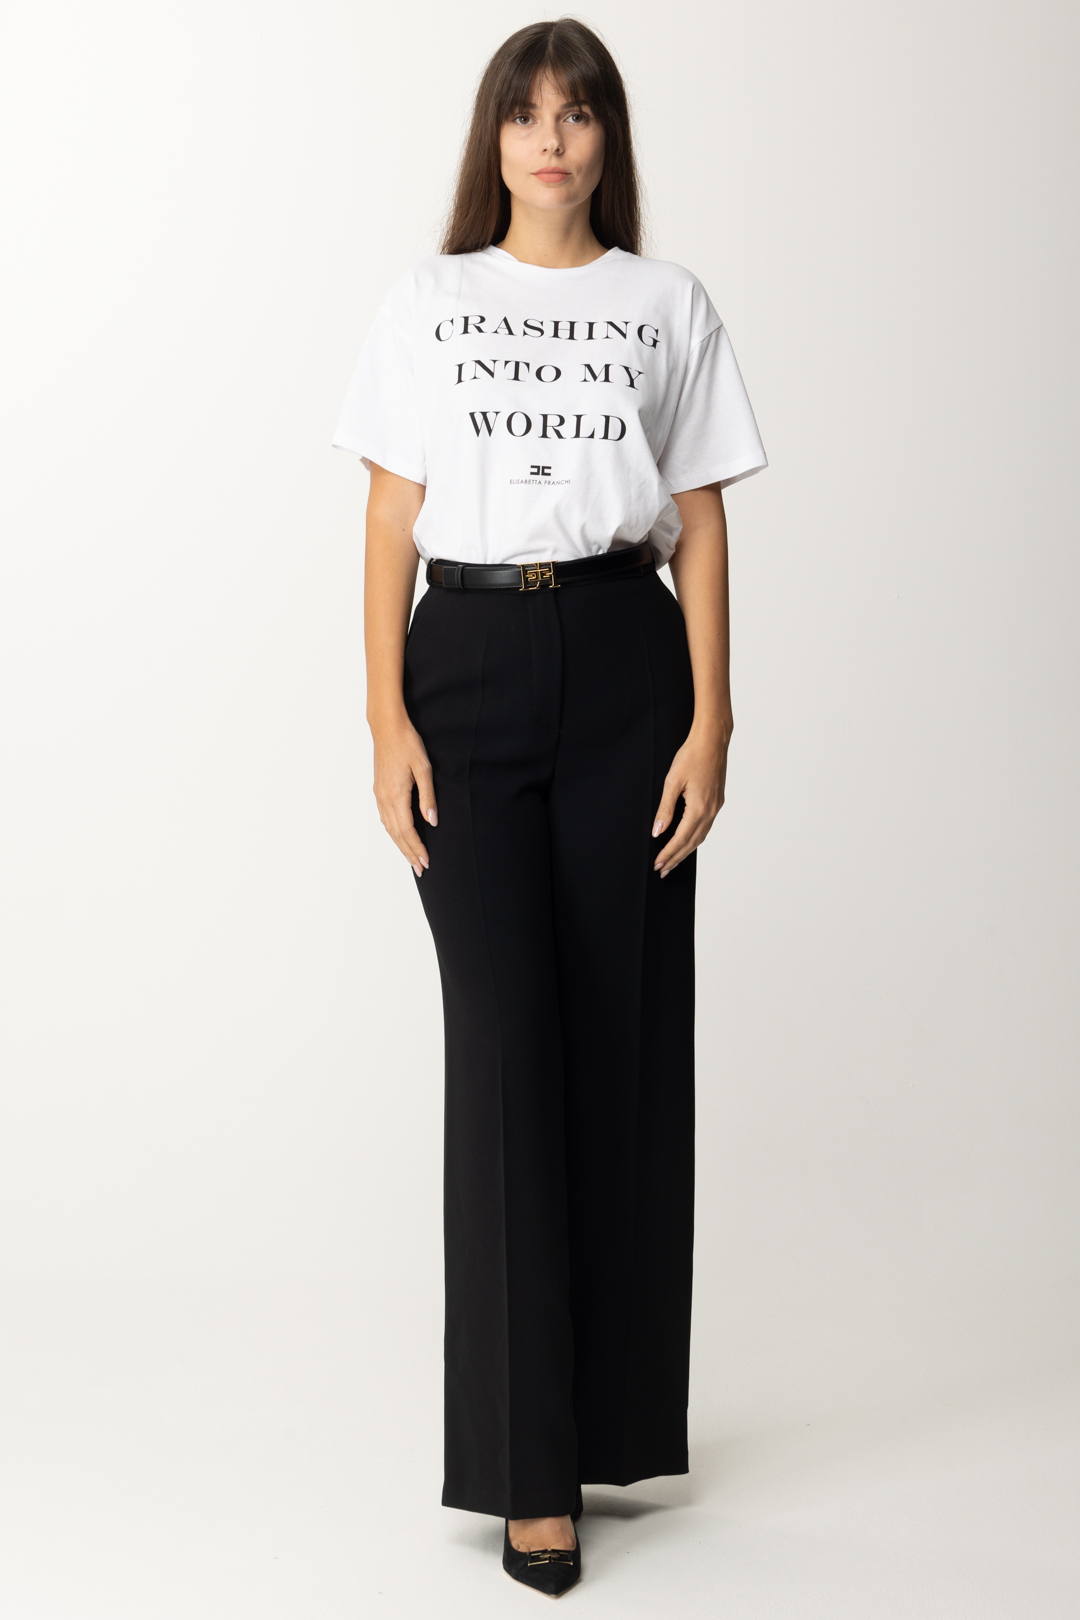 Podgląd: Elisabetta Franchi Oversize'owa koszulka z nadrukiem Gesso